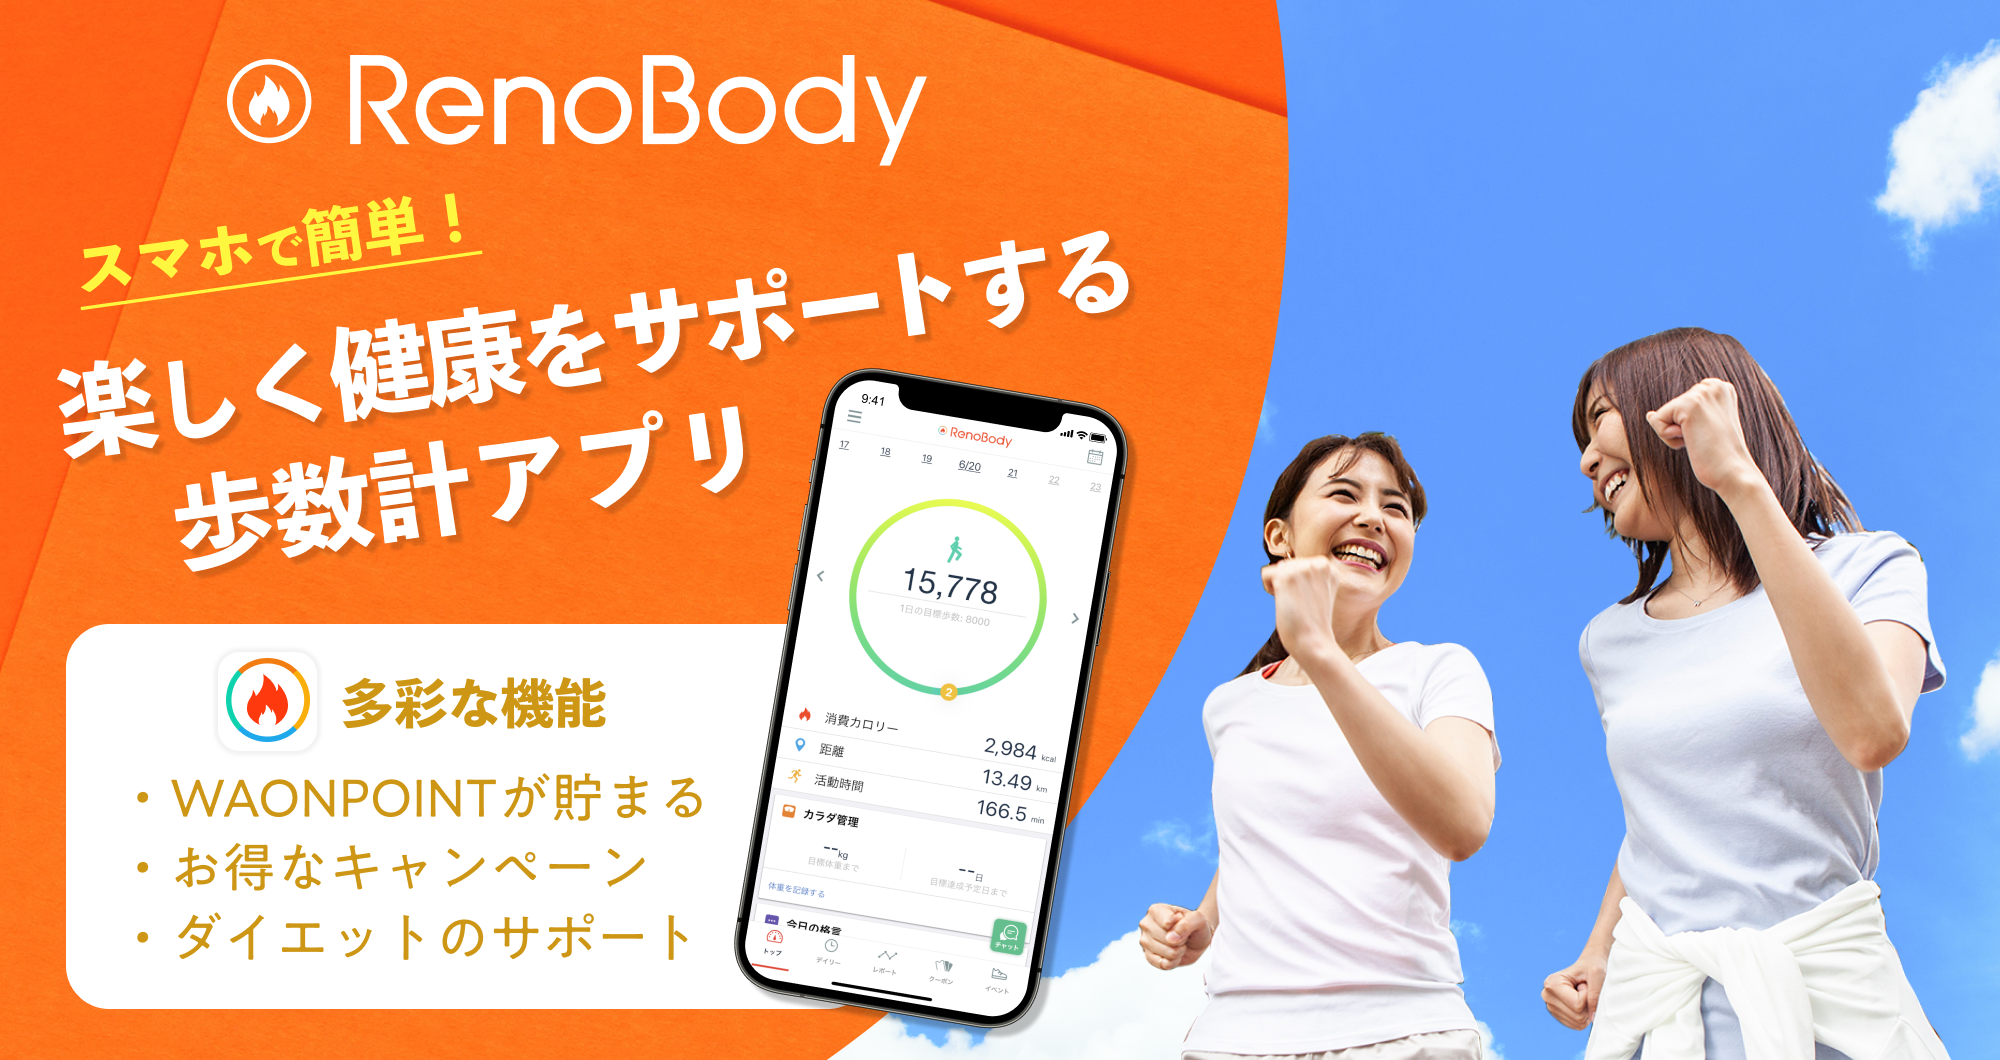 RenoBody スマホで簡単！楽しく健康をサポートする歩数計アプリ 多彩な機能 WAOPOINTが貯まる お得なキャンペーン ダイエットのサポート